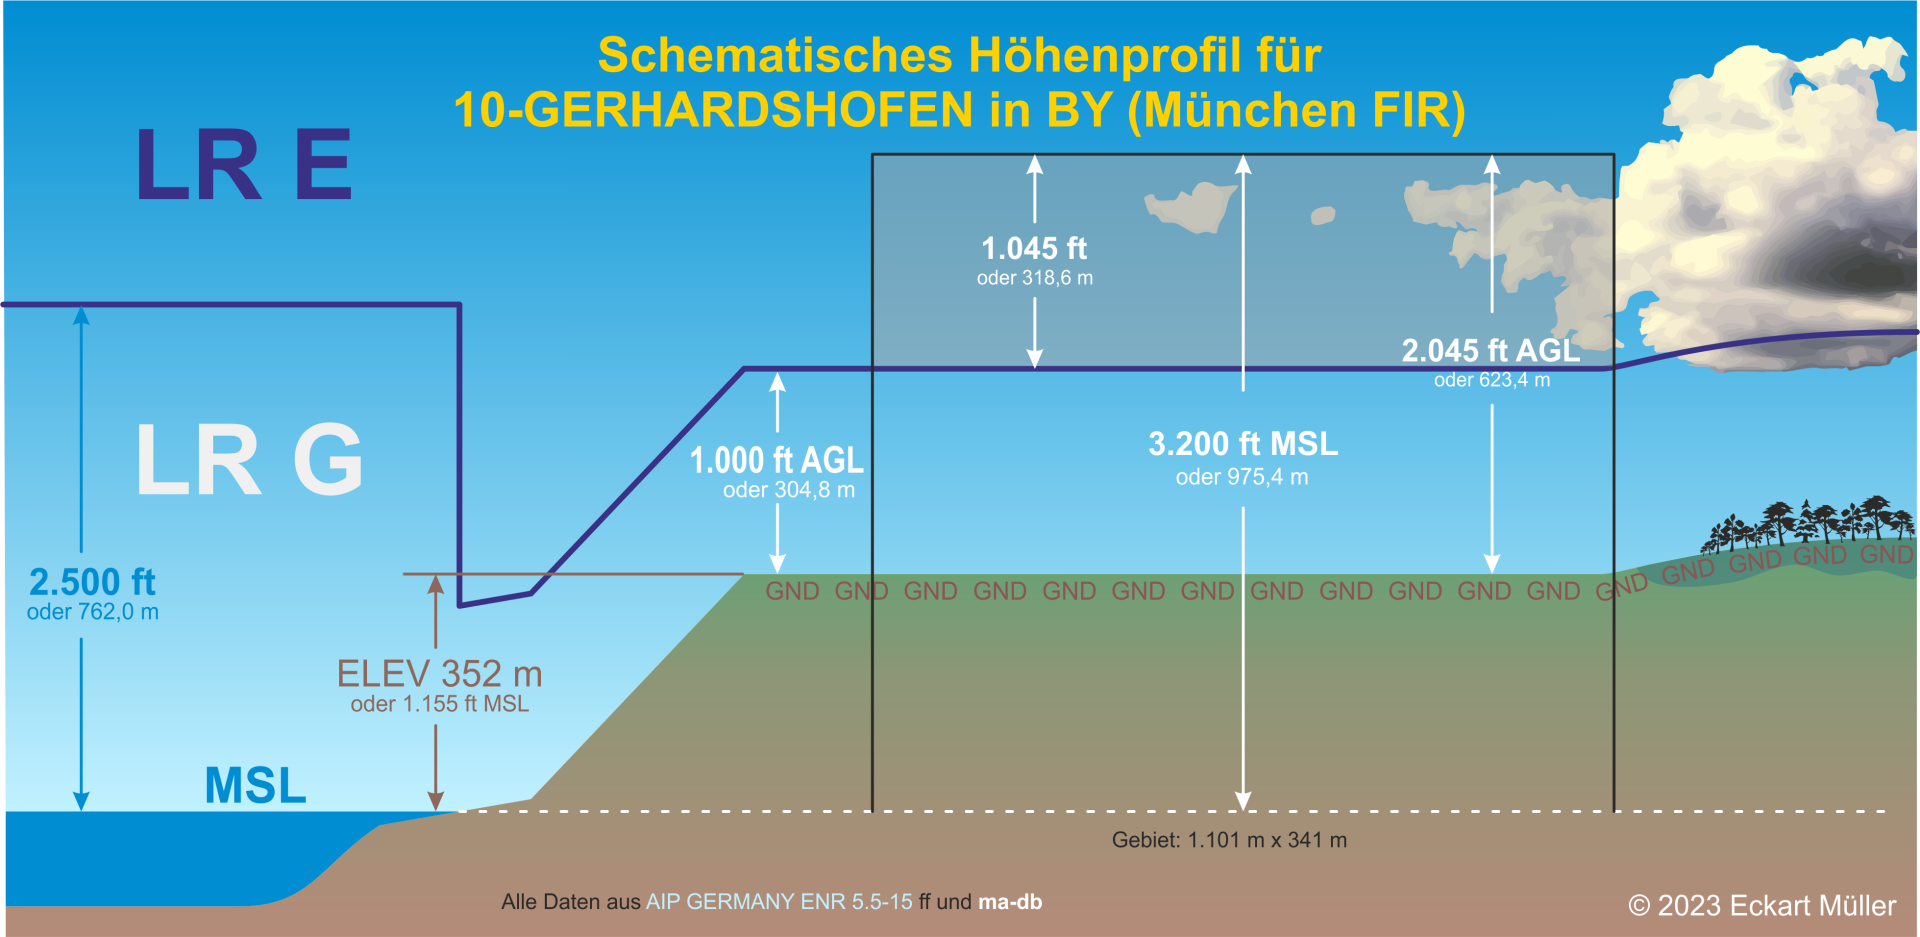 10-GERHARDSHOFEN - MFC Gerhardshofen eV - Höhenprofil.png